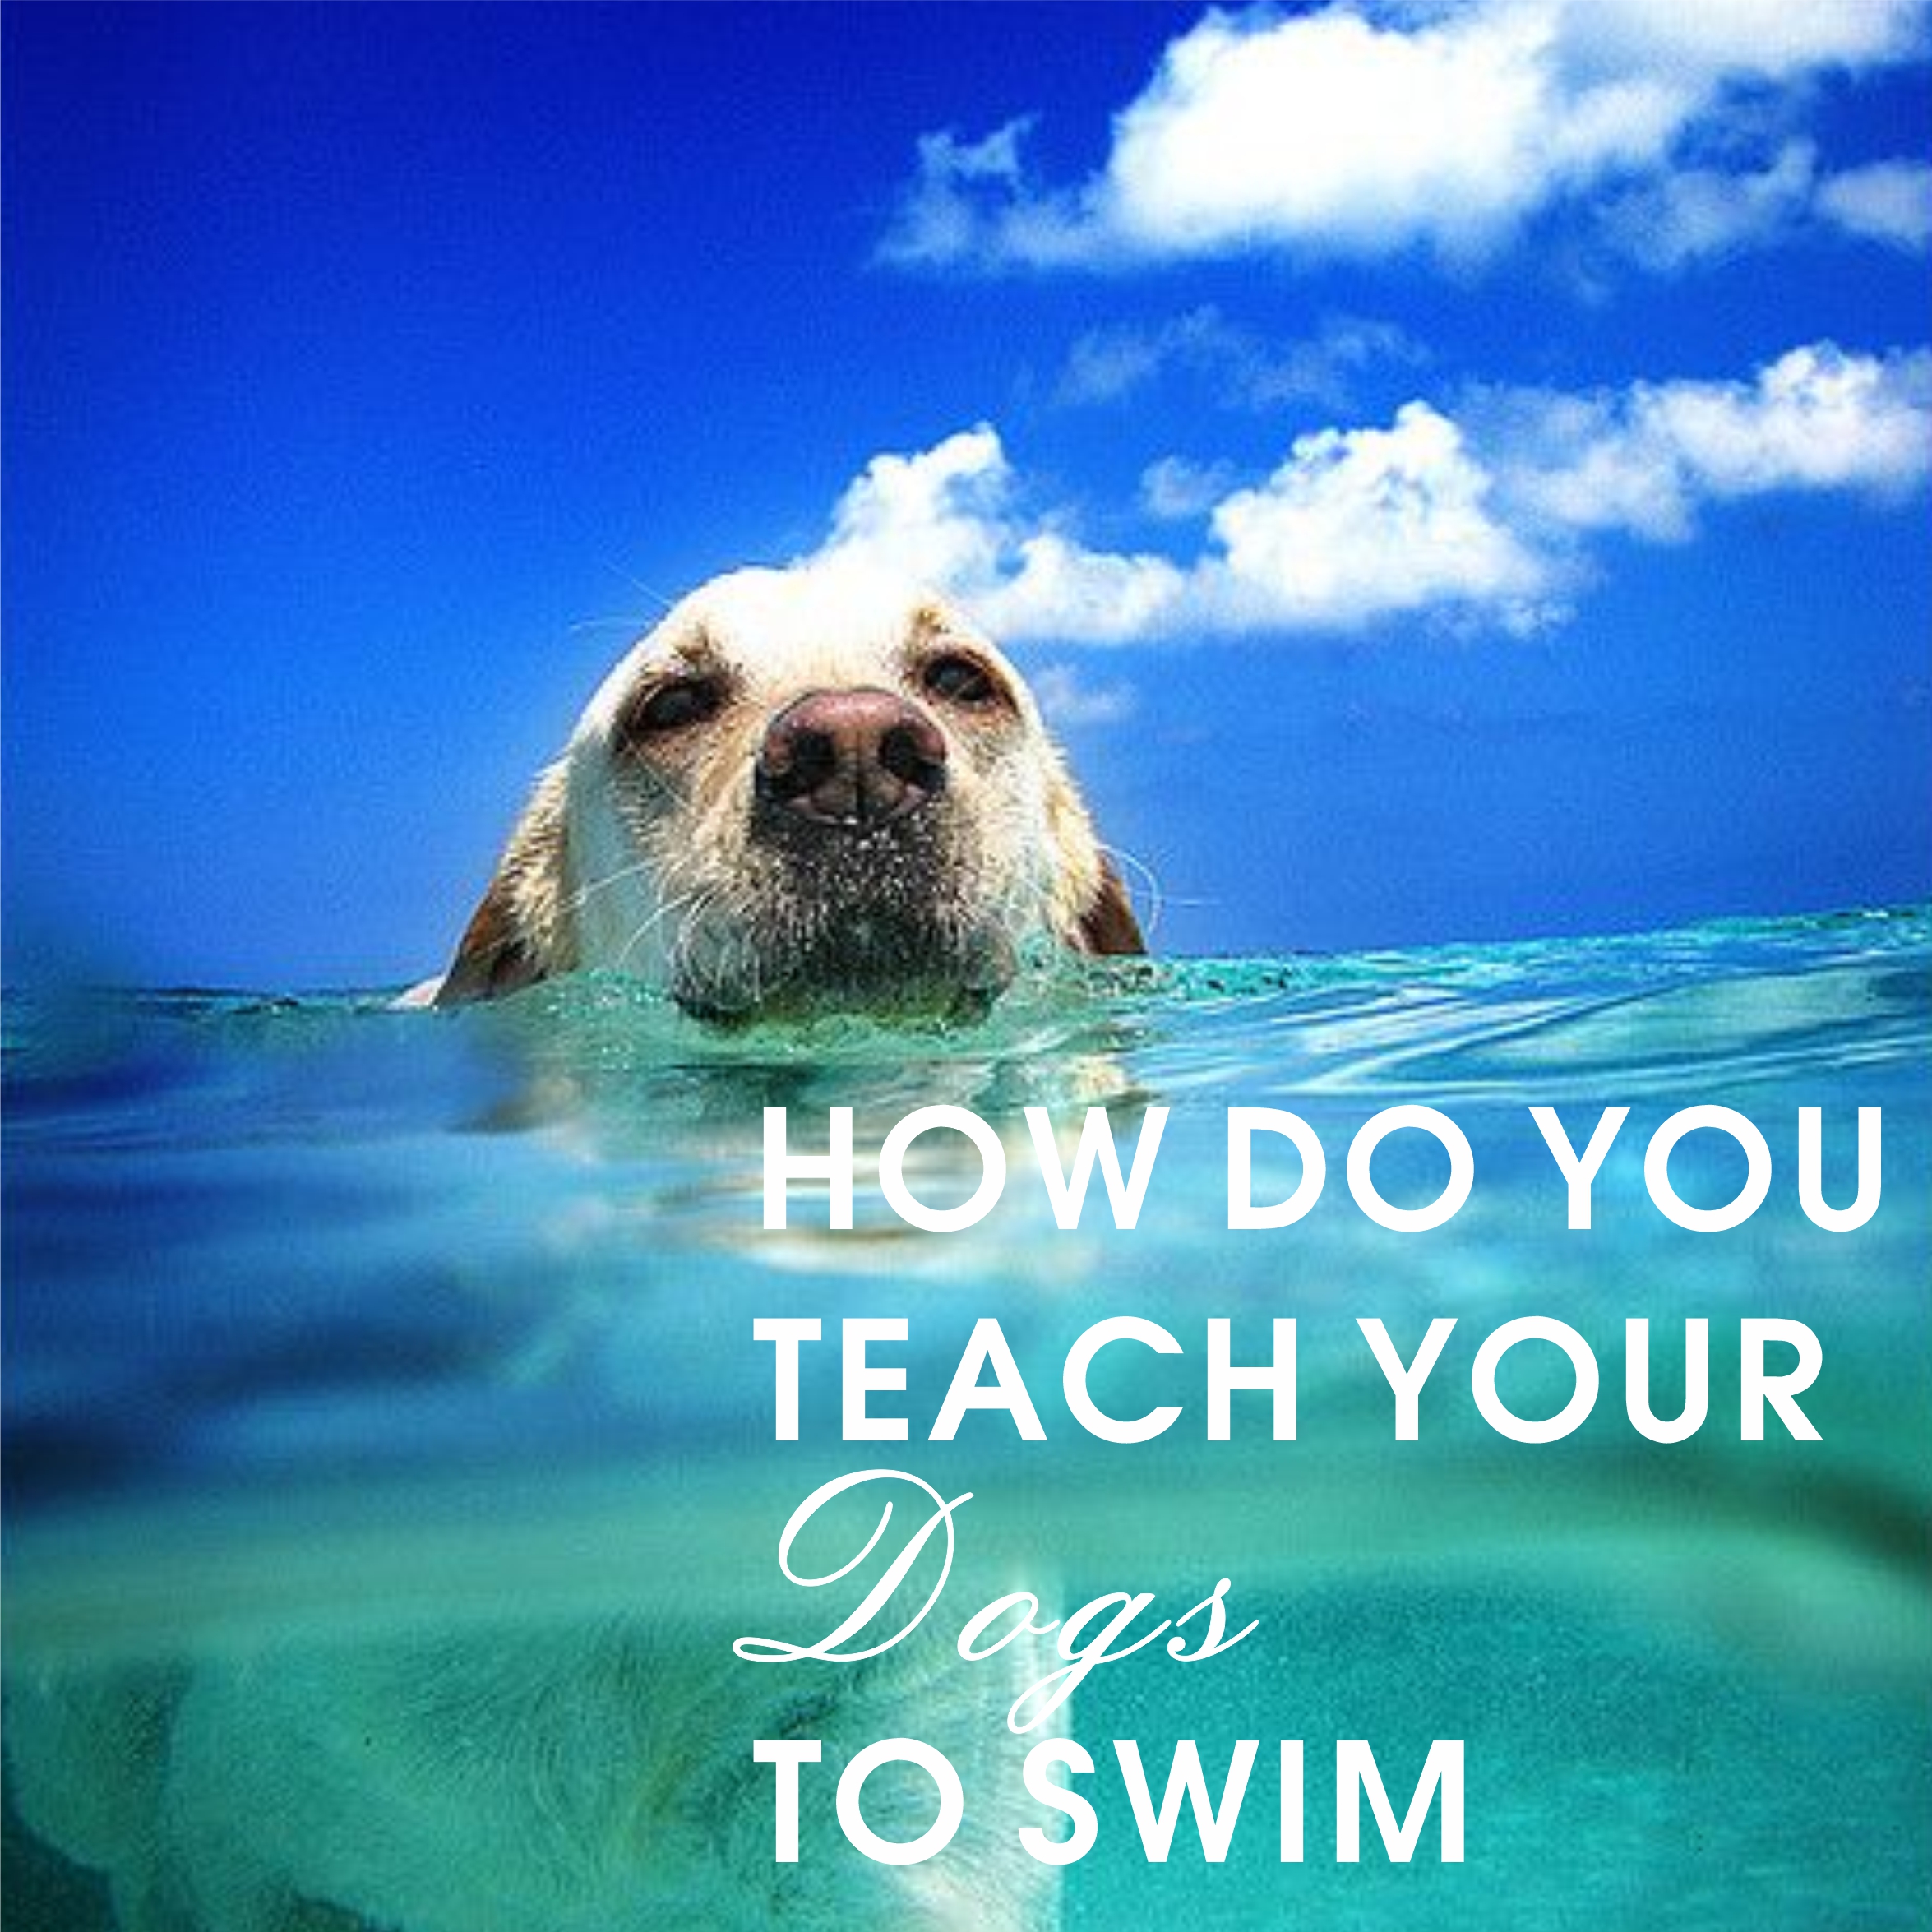 How do you teach your dog to swim